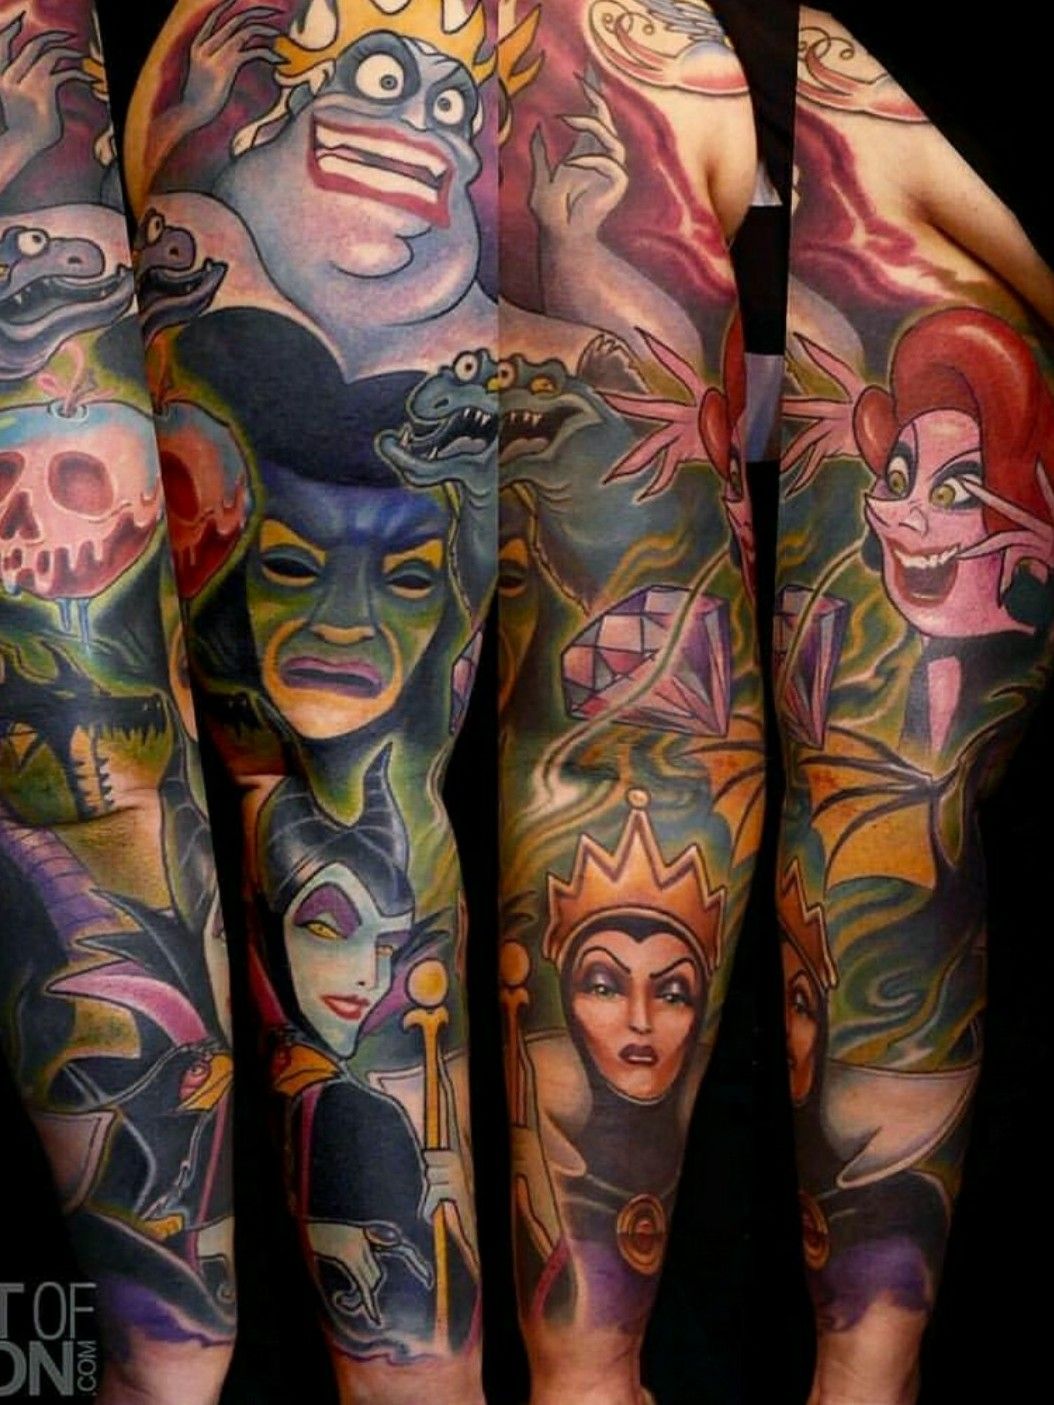 Disney Villain Tattoos  Tattoo Ideas Artists and Models  Disney villains  Artists and models Villain